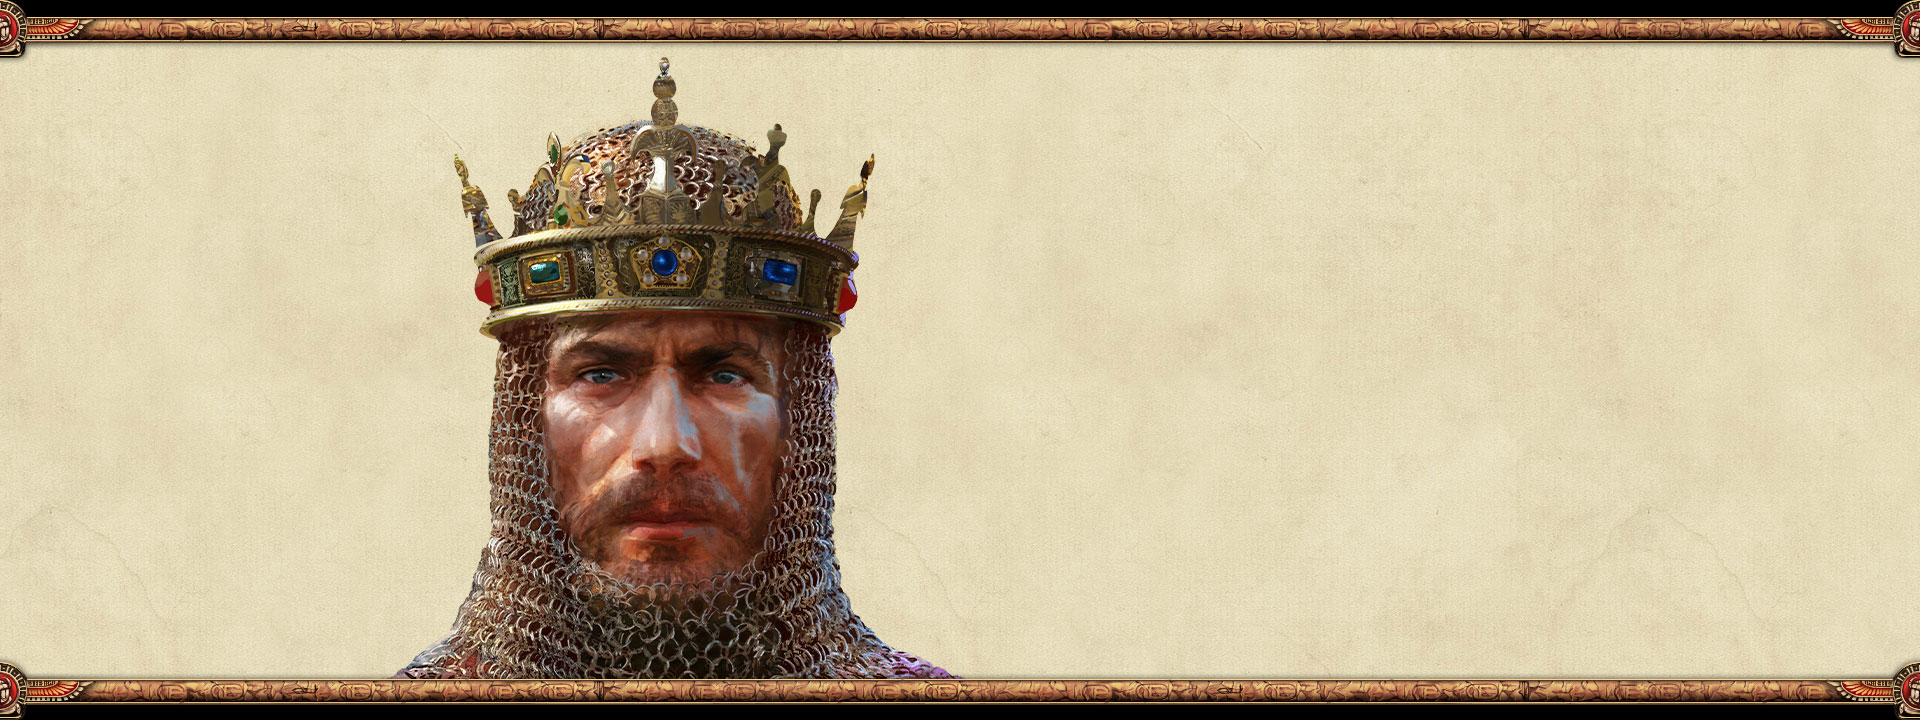 De heerser van een imperium met een maliënkolder en een kroon op zijn hoofd